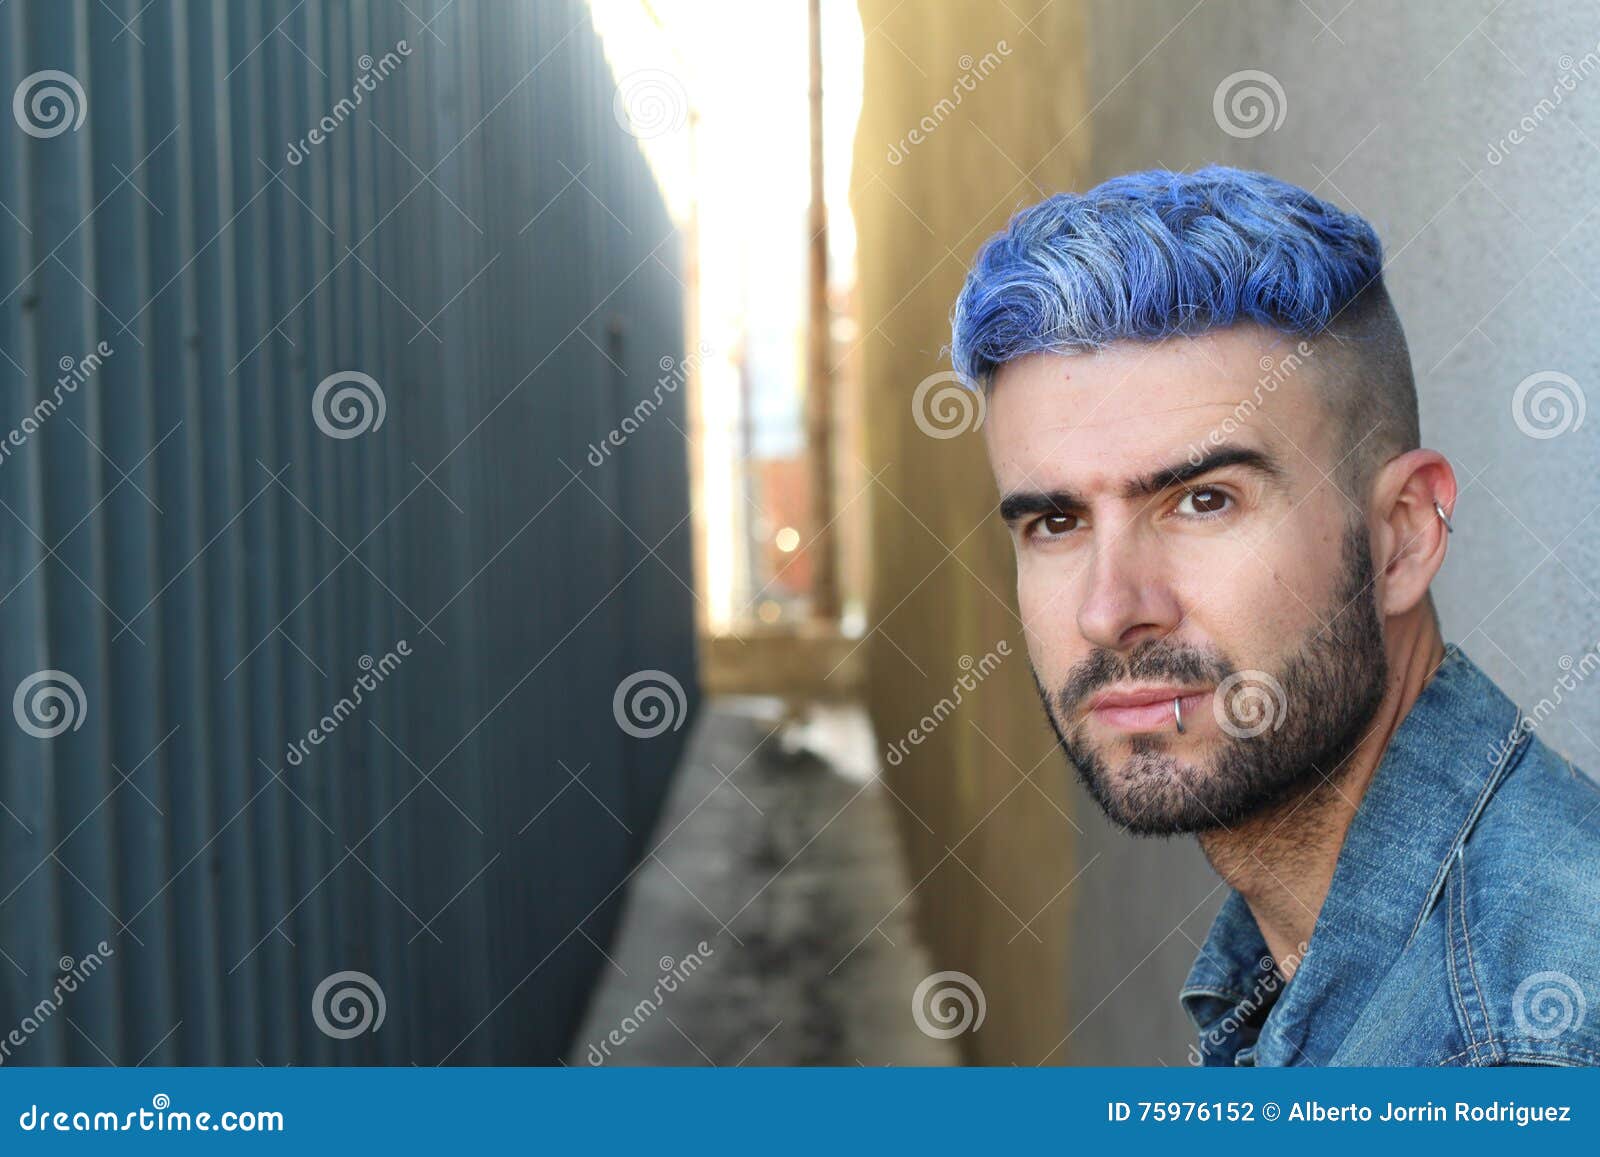 men blue hair dye